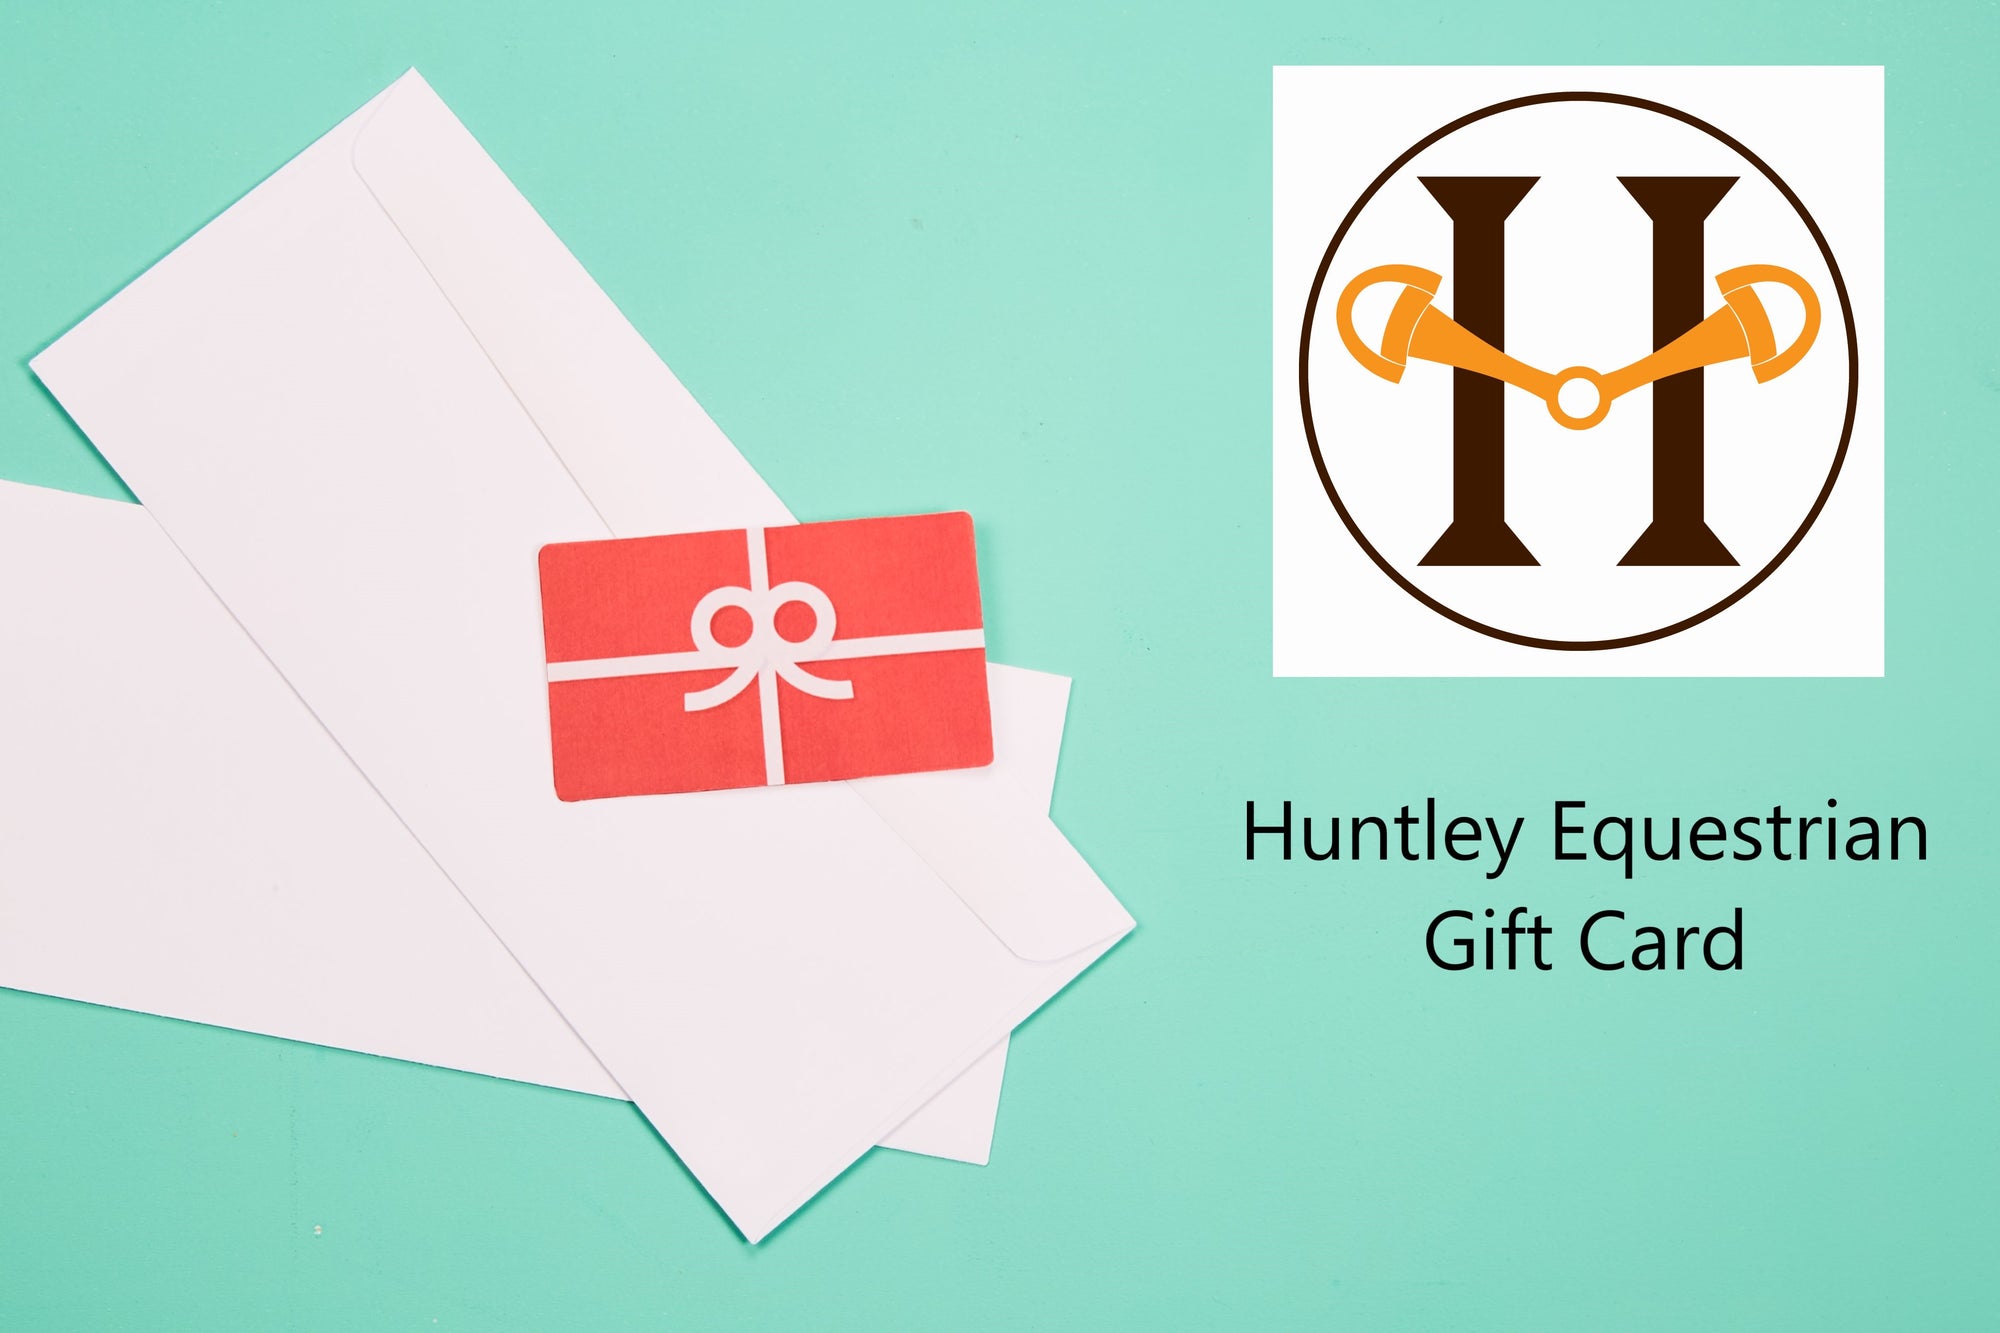 Huntley Equestrian Gift Card - Huntley Equestrian 